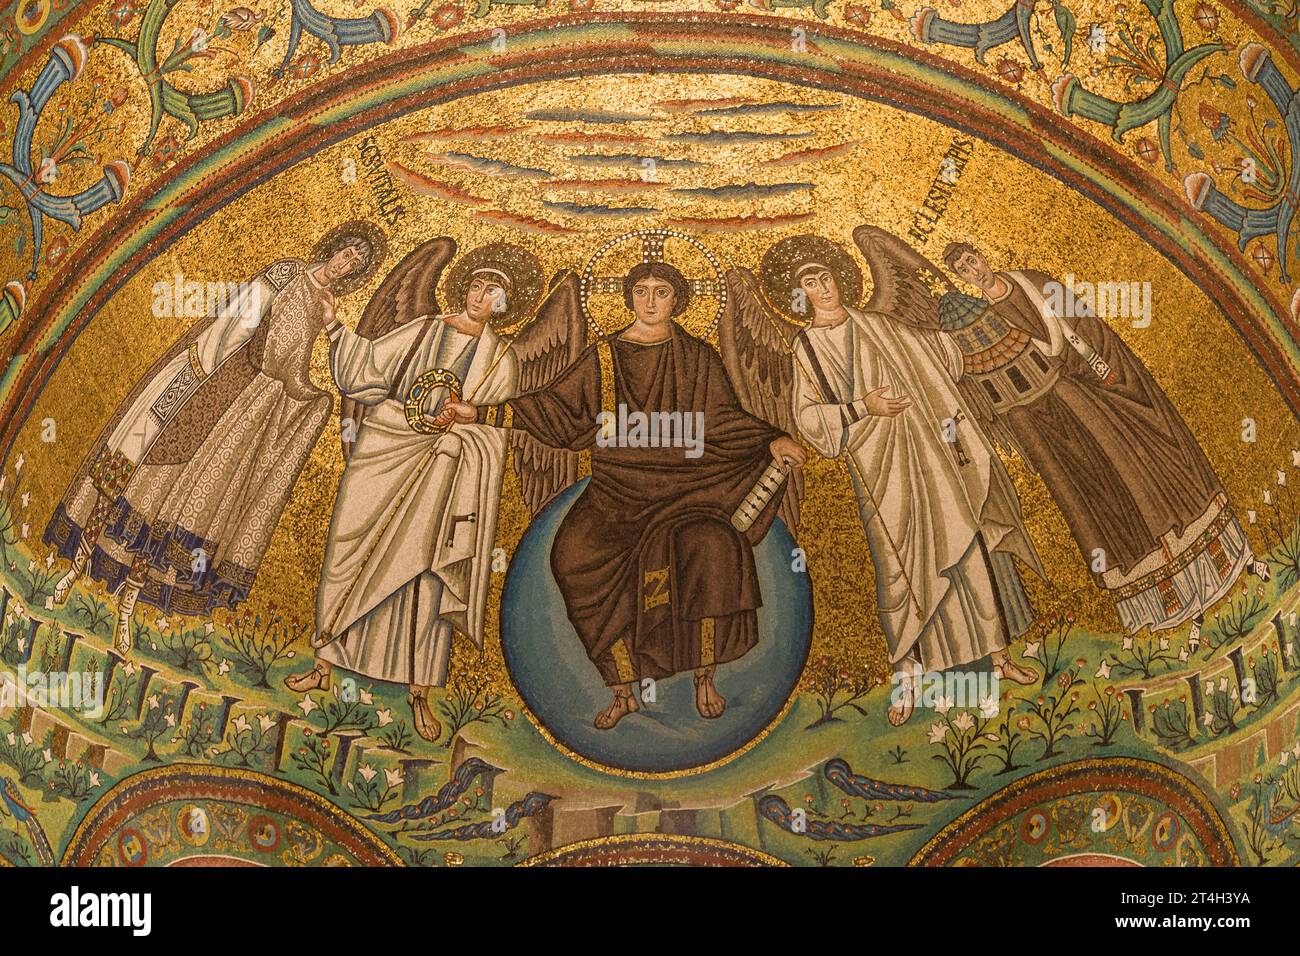 Apse Mosaic of the Basilica San Vitale in Ravenna, Emilia-Romagna, Italy. Stock Photo